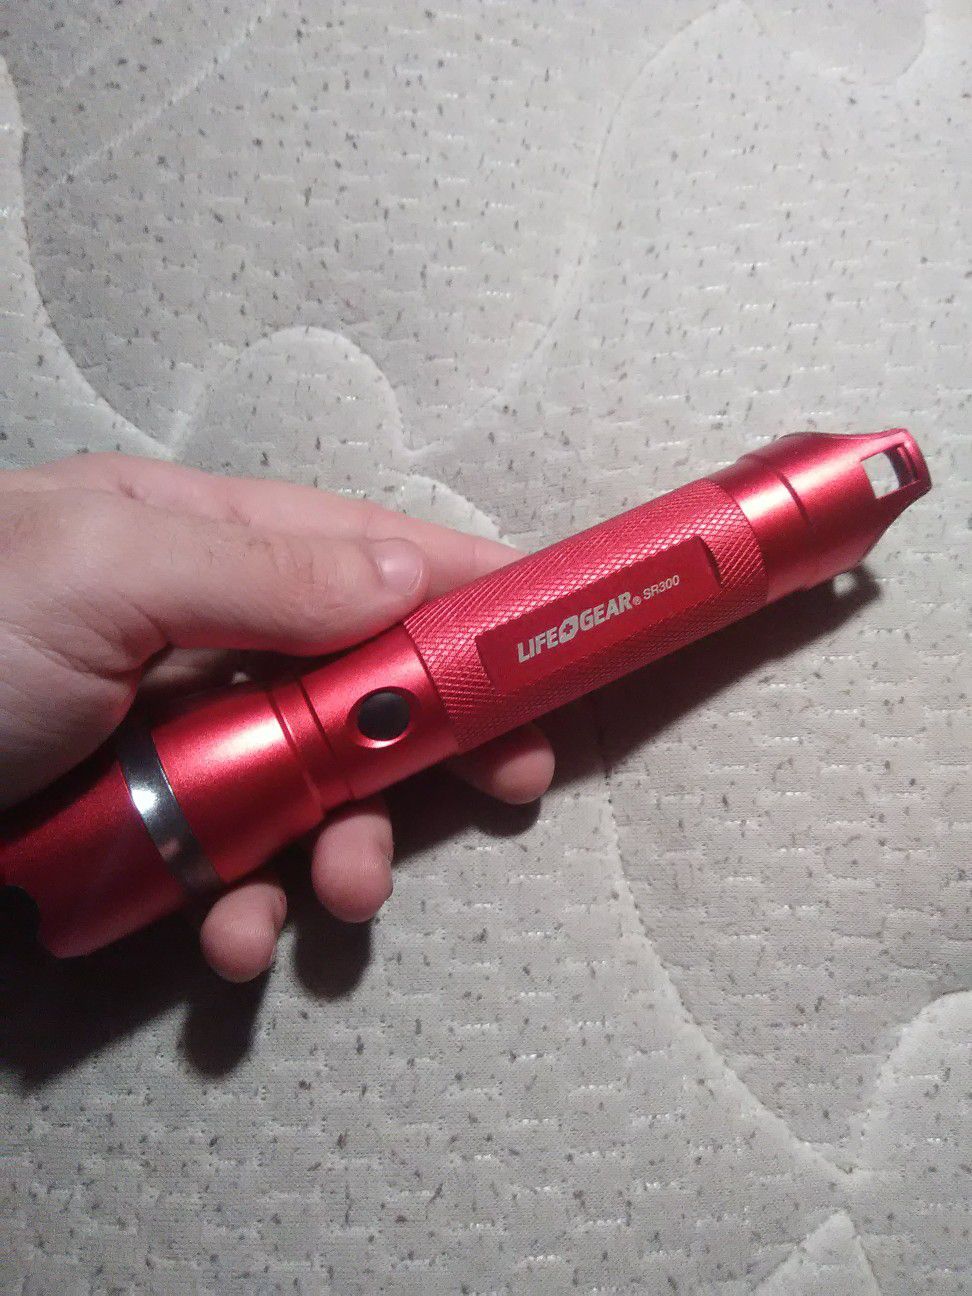 Life gear emergency flashlight